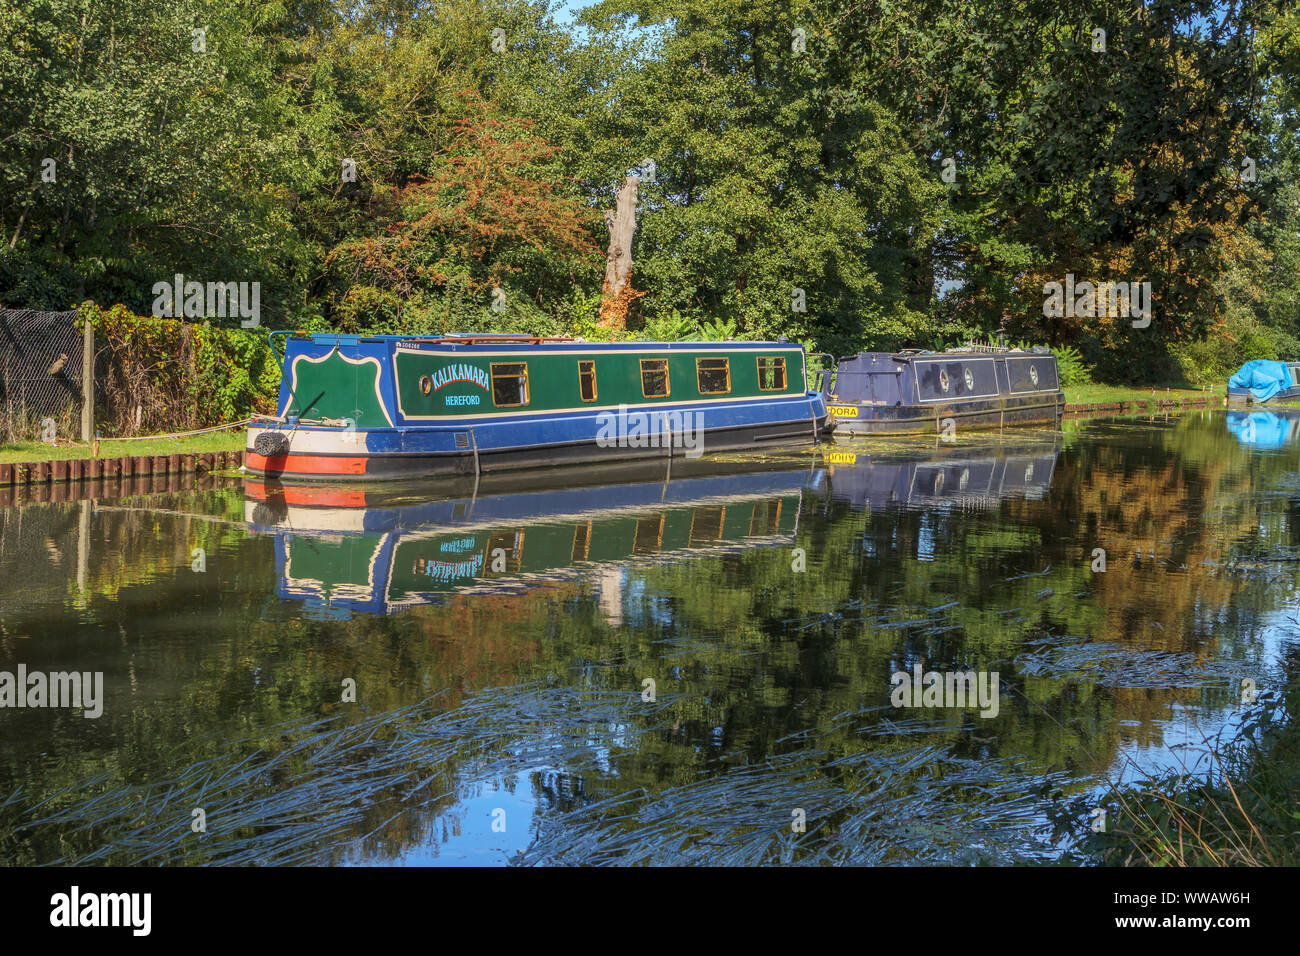 Bateaux amarrés sur les rives de la rivière Wey comme il se joint à l'Basingstoke Canal entre Weybridge et New Haw, Surrey, Angleterre du Sud-Est, Royaume-Uni Banque D'Images